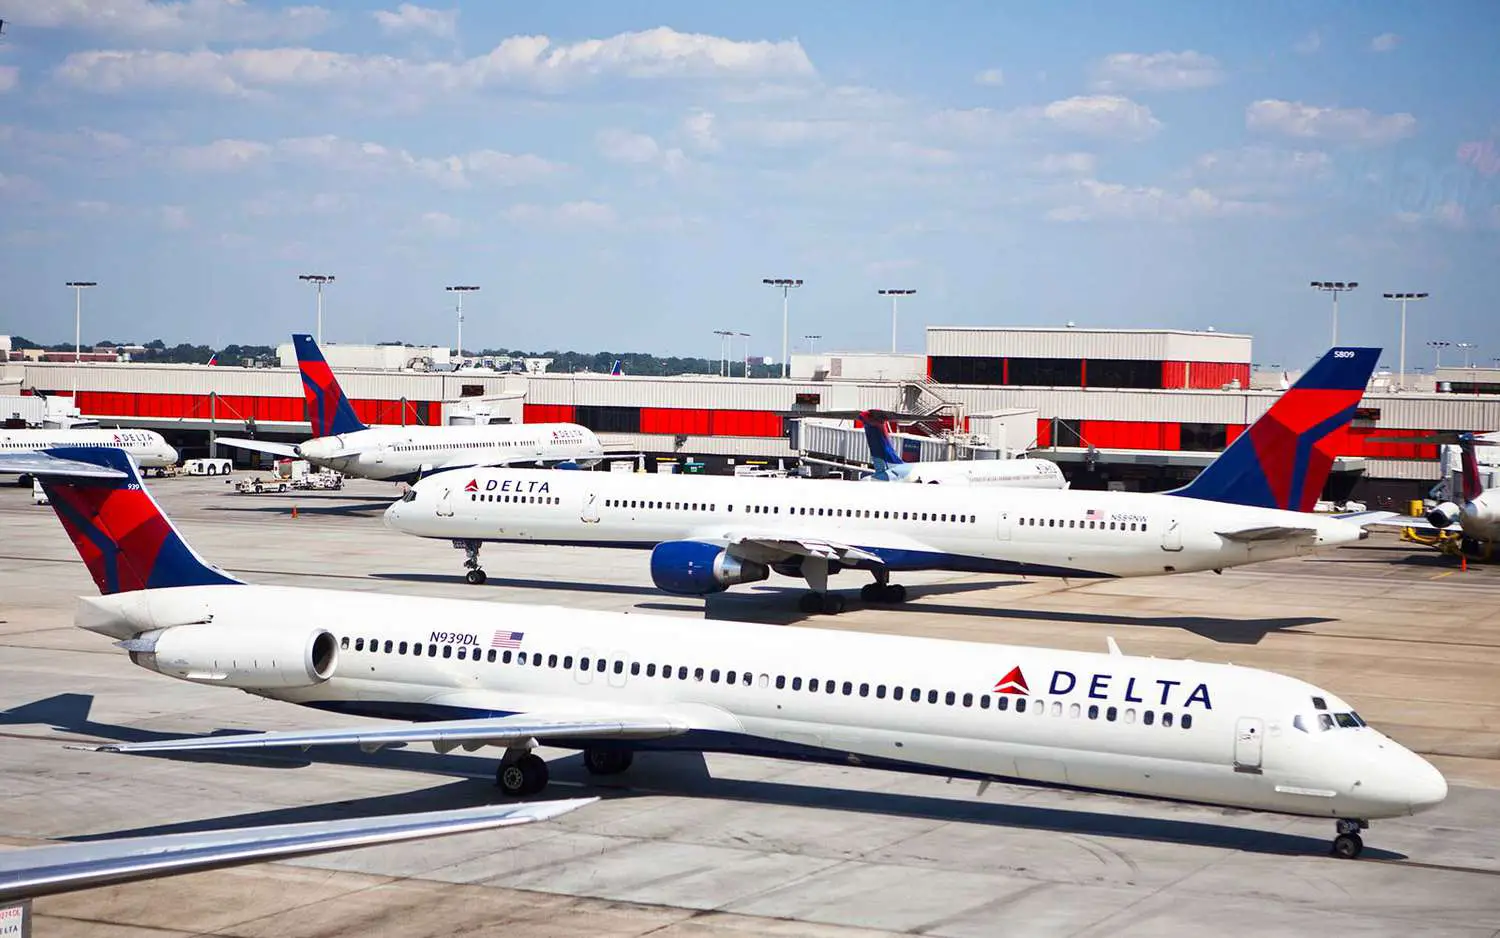 ¿Con qué antelación se puede realizar el check-in para un vuelo de Delta?